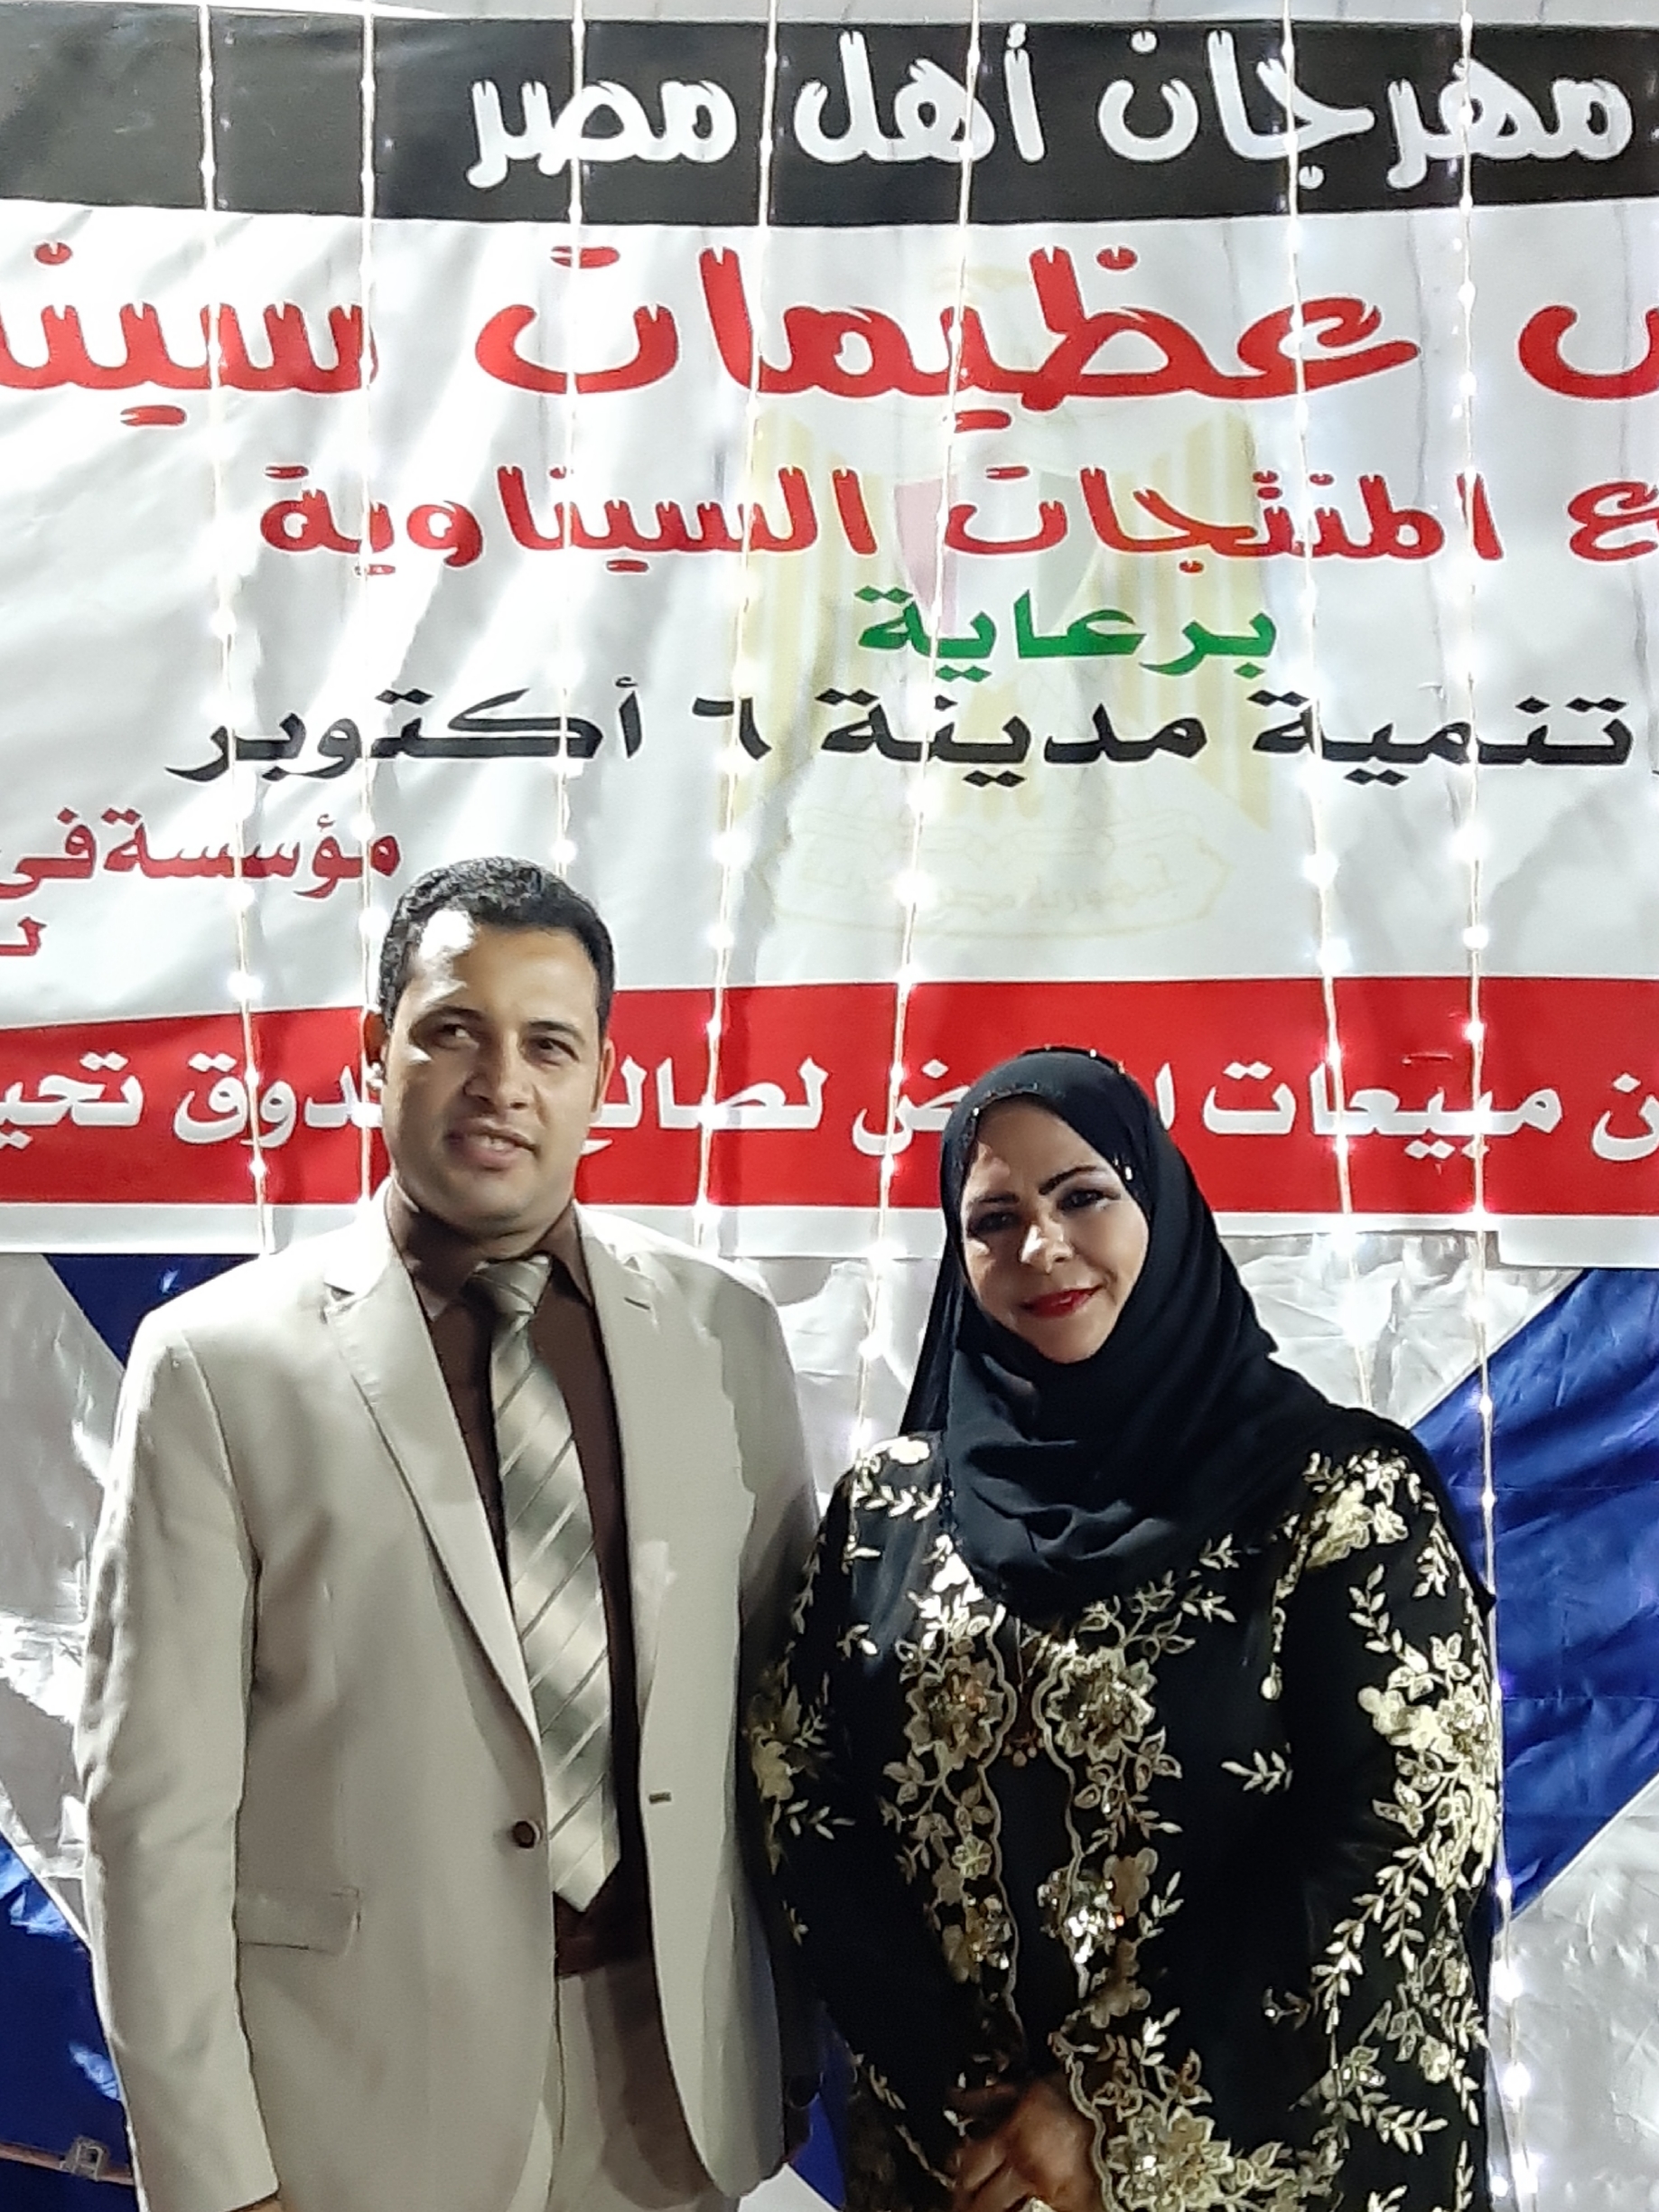 المستشار/ ياسين عبدالمنعم - معرض عظيمات سيناء أصبح من بصمات مدينة ٦أكتوبر ومؤسستي 